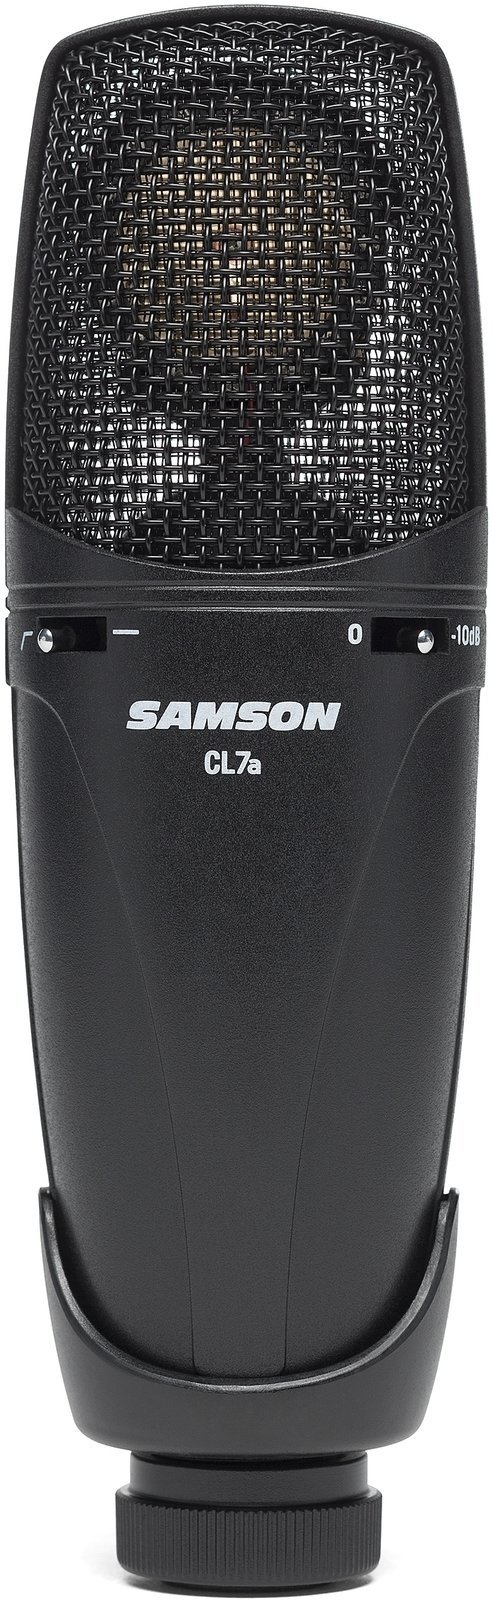 Microphone à condensateur pour studio Samson CL7a Microphone à condensateur pour studio